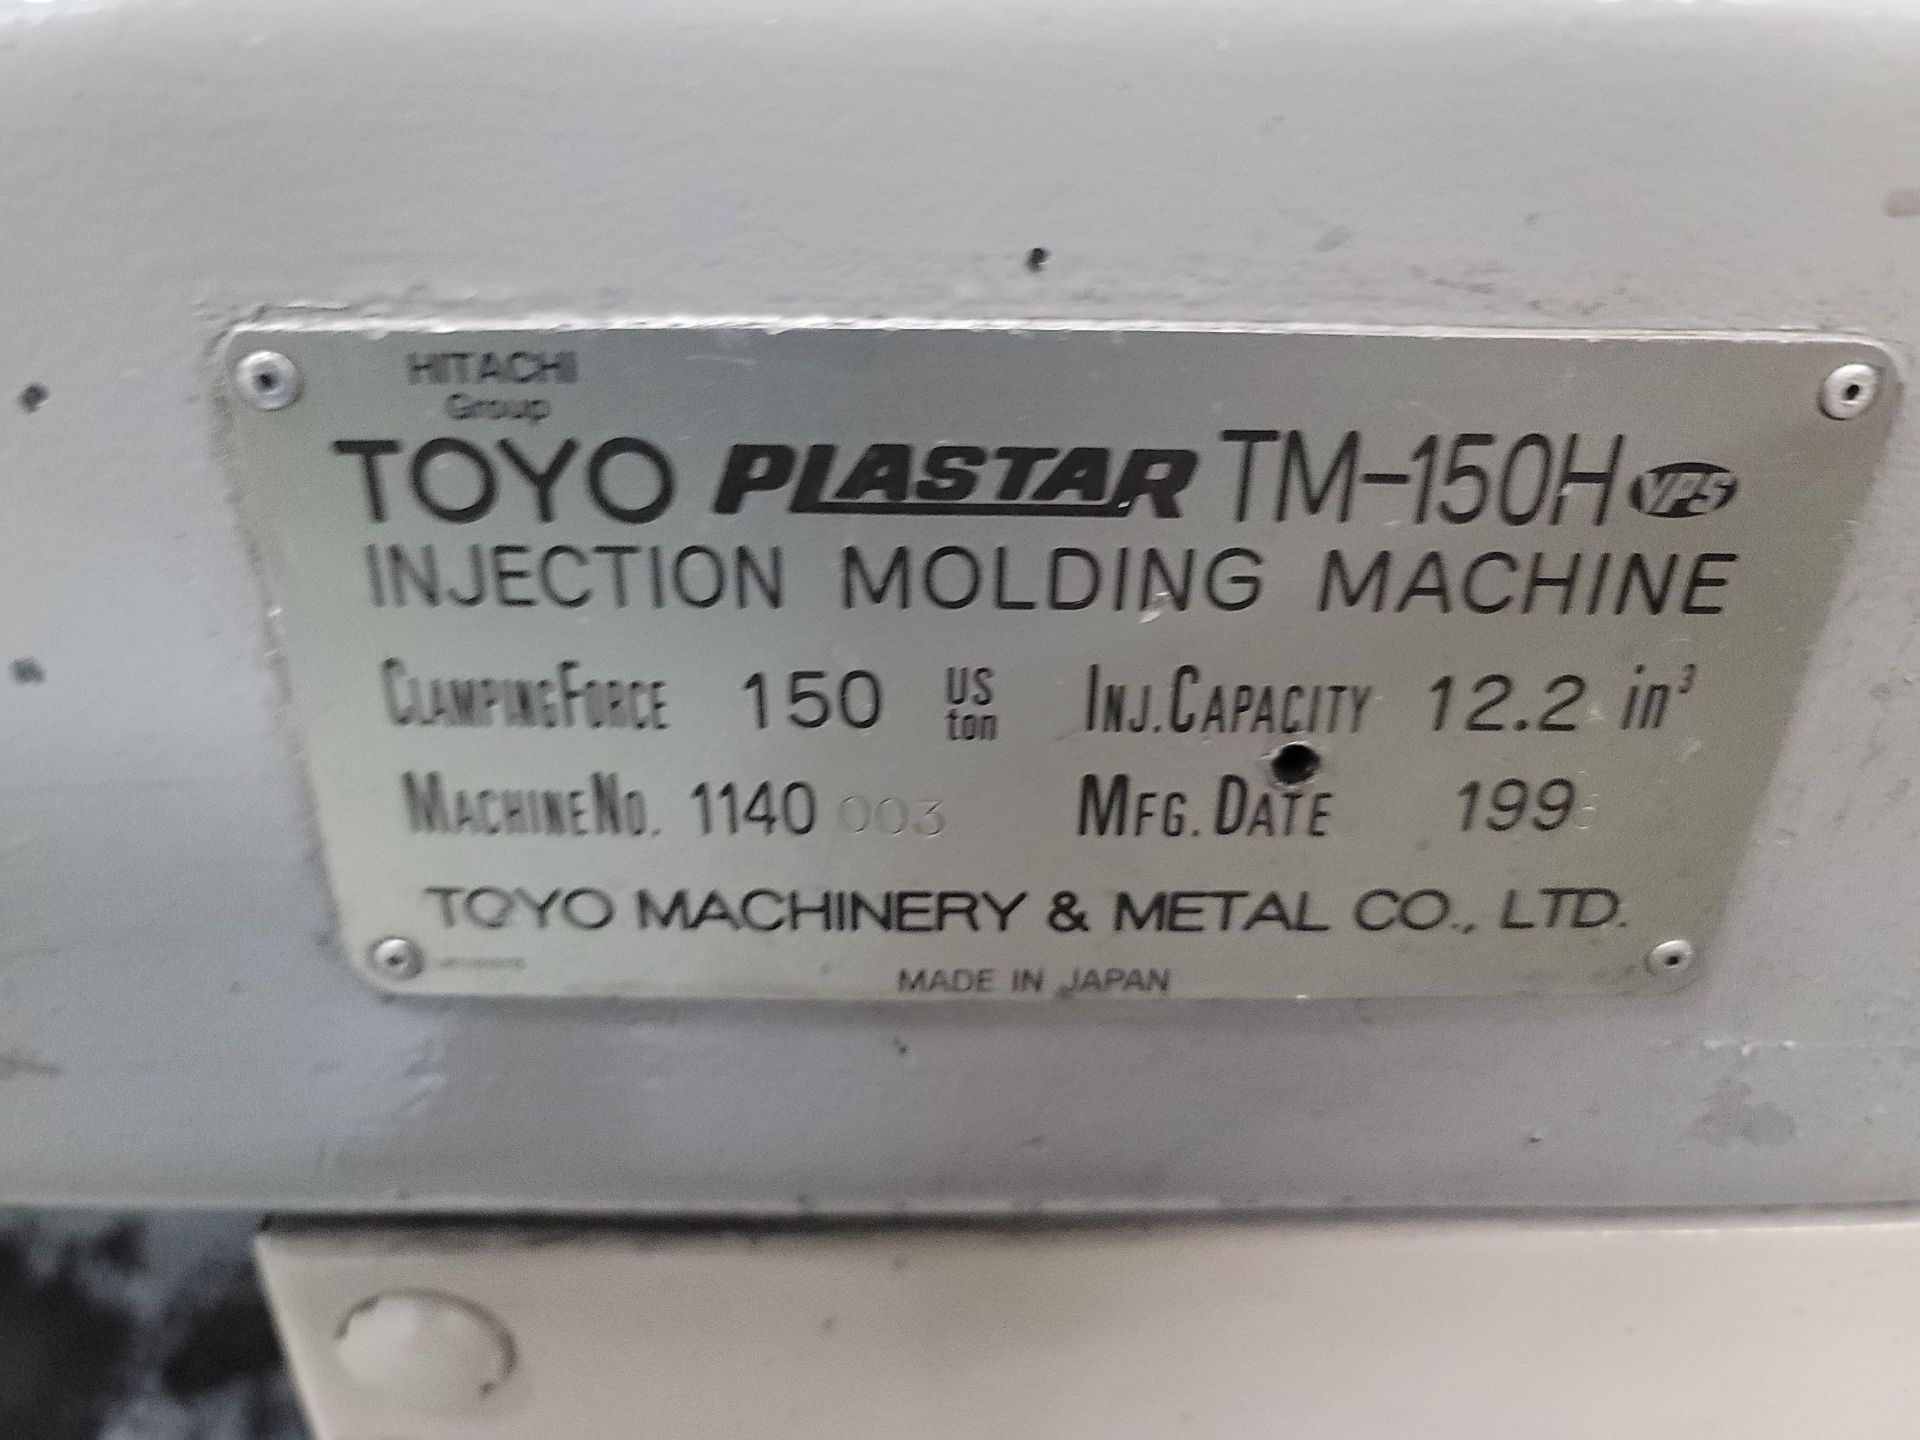 TOYO PLASTAR TM-150H PLASTIC INJECTION MOLDING MACHINE, 150 TON CAPACITY, 6.7 OZ SHOT SIZE, 25.2" - Image 8 of 8